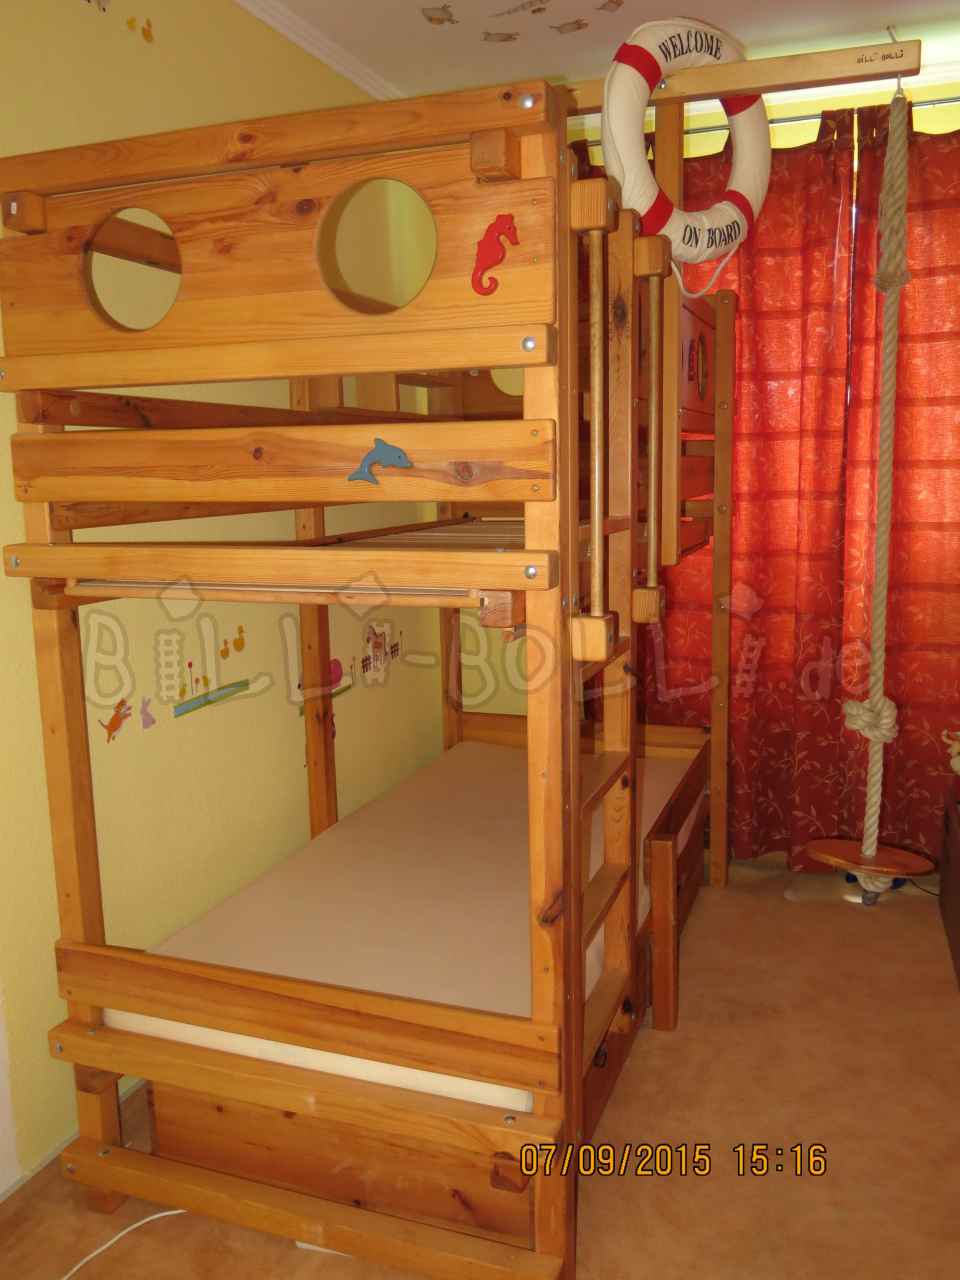 चारपाई बिस्तर 90 x 200 सेमी, शहद के रंग का पाइन जिसमें फ्लैट पायदान शामिल हैं (कोटि: चारपाई बिस्तर का इस्तेमाल किया)